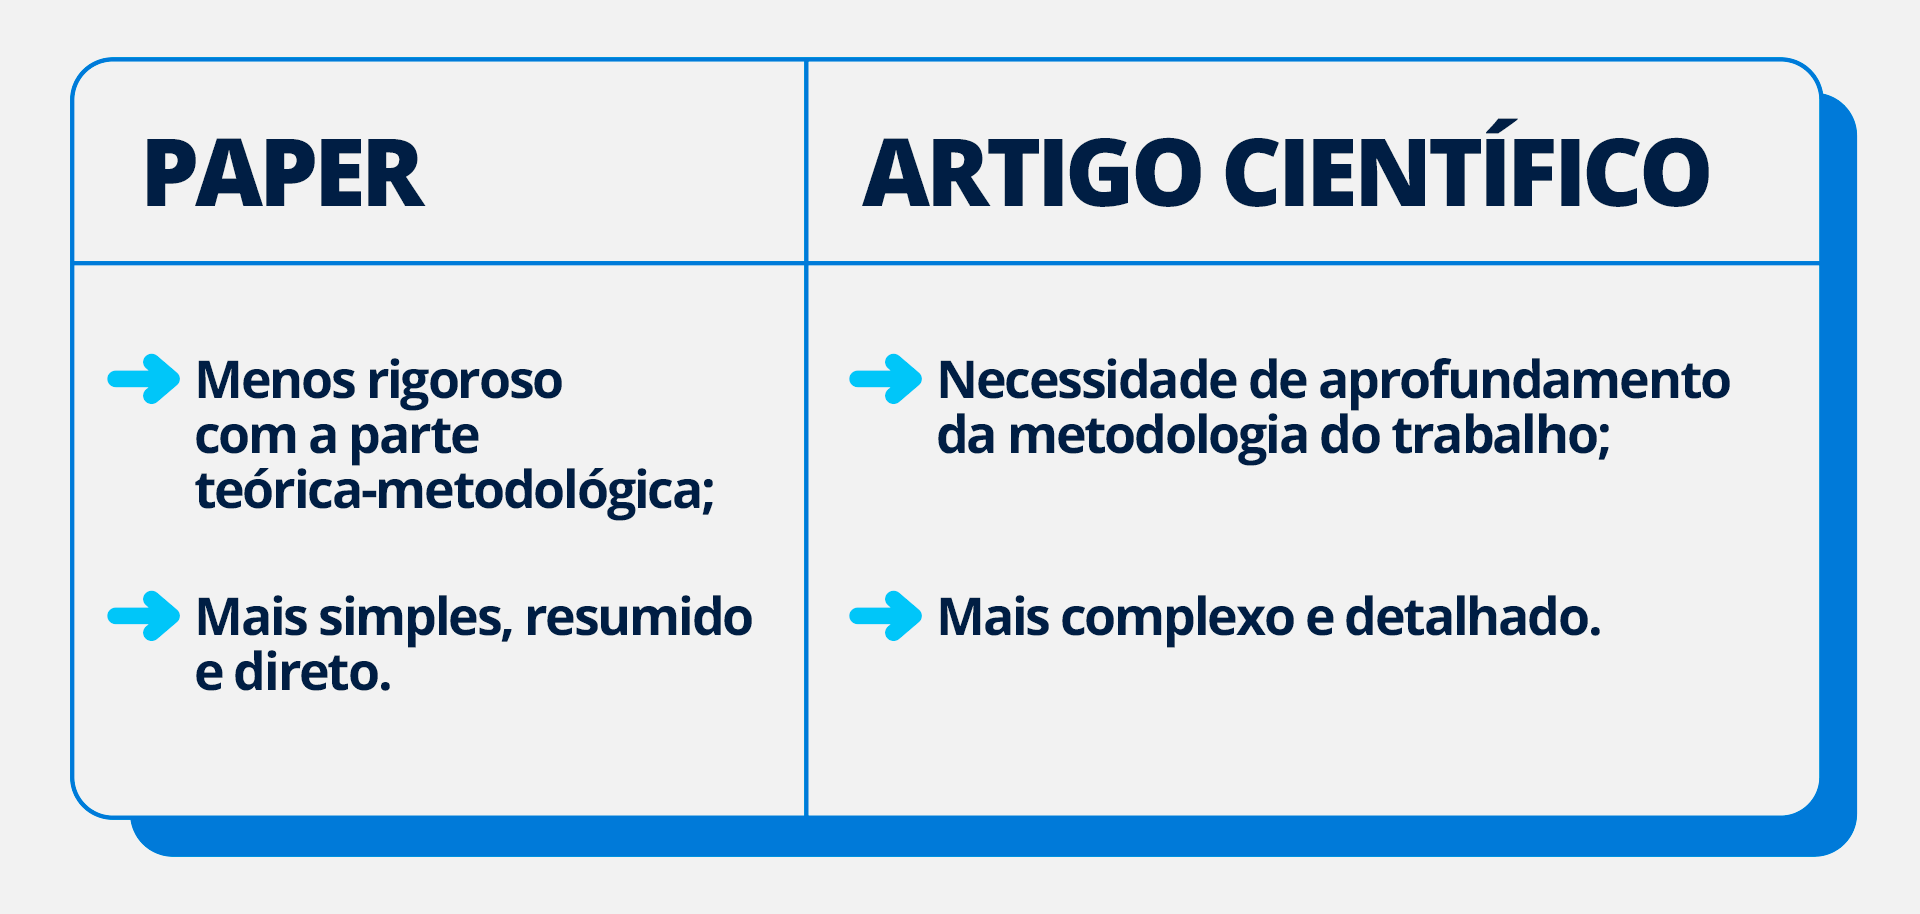 Fast-Track Your Assessoria Acadêmica